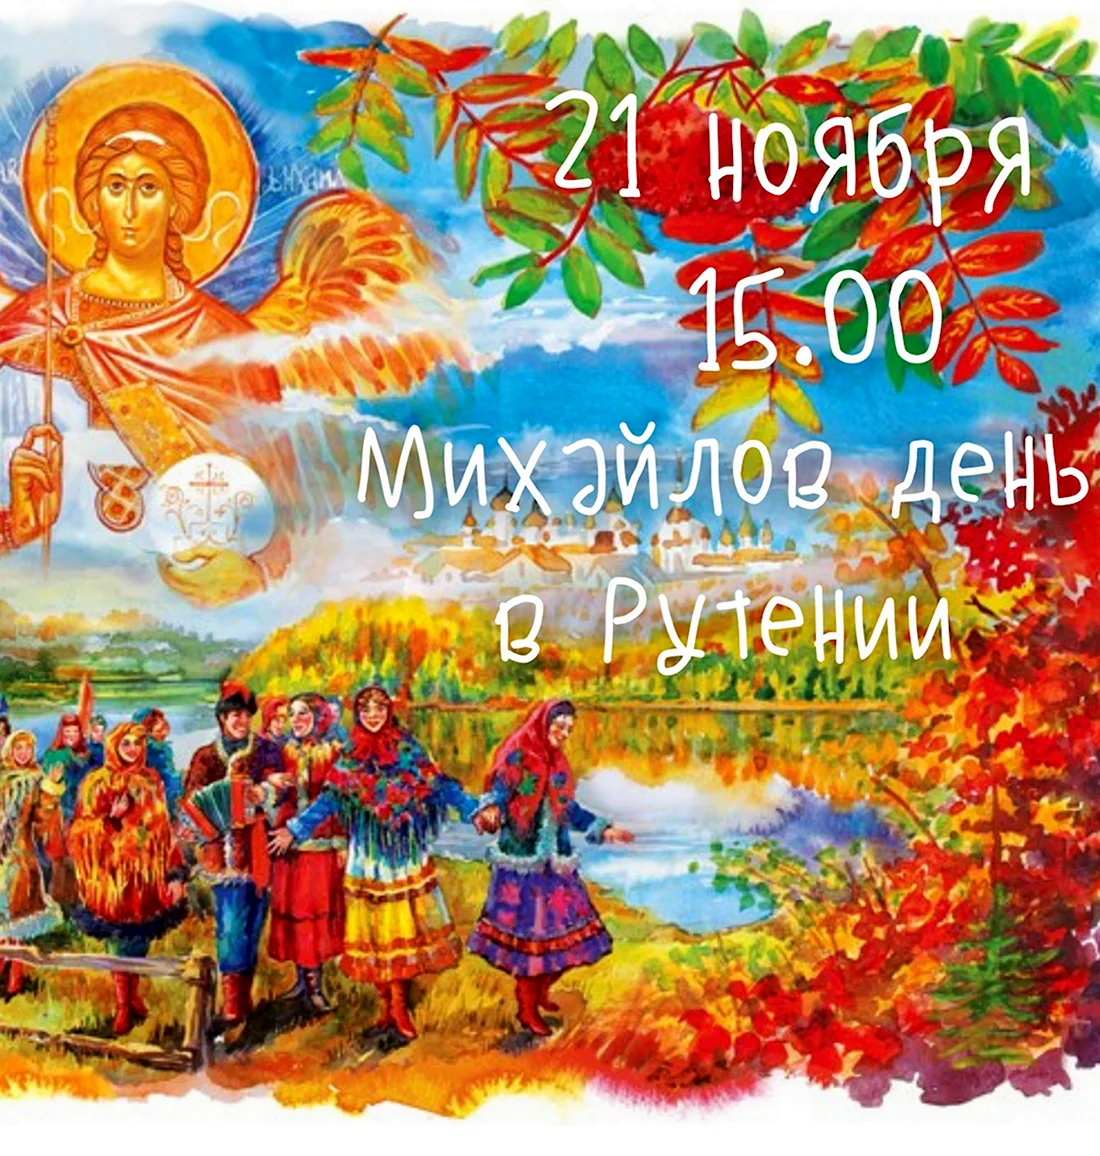 Народный праздник Михайлов день. Открытка, картинка с поздравлением, с праздником